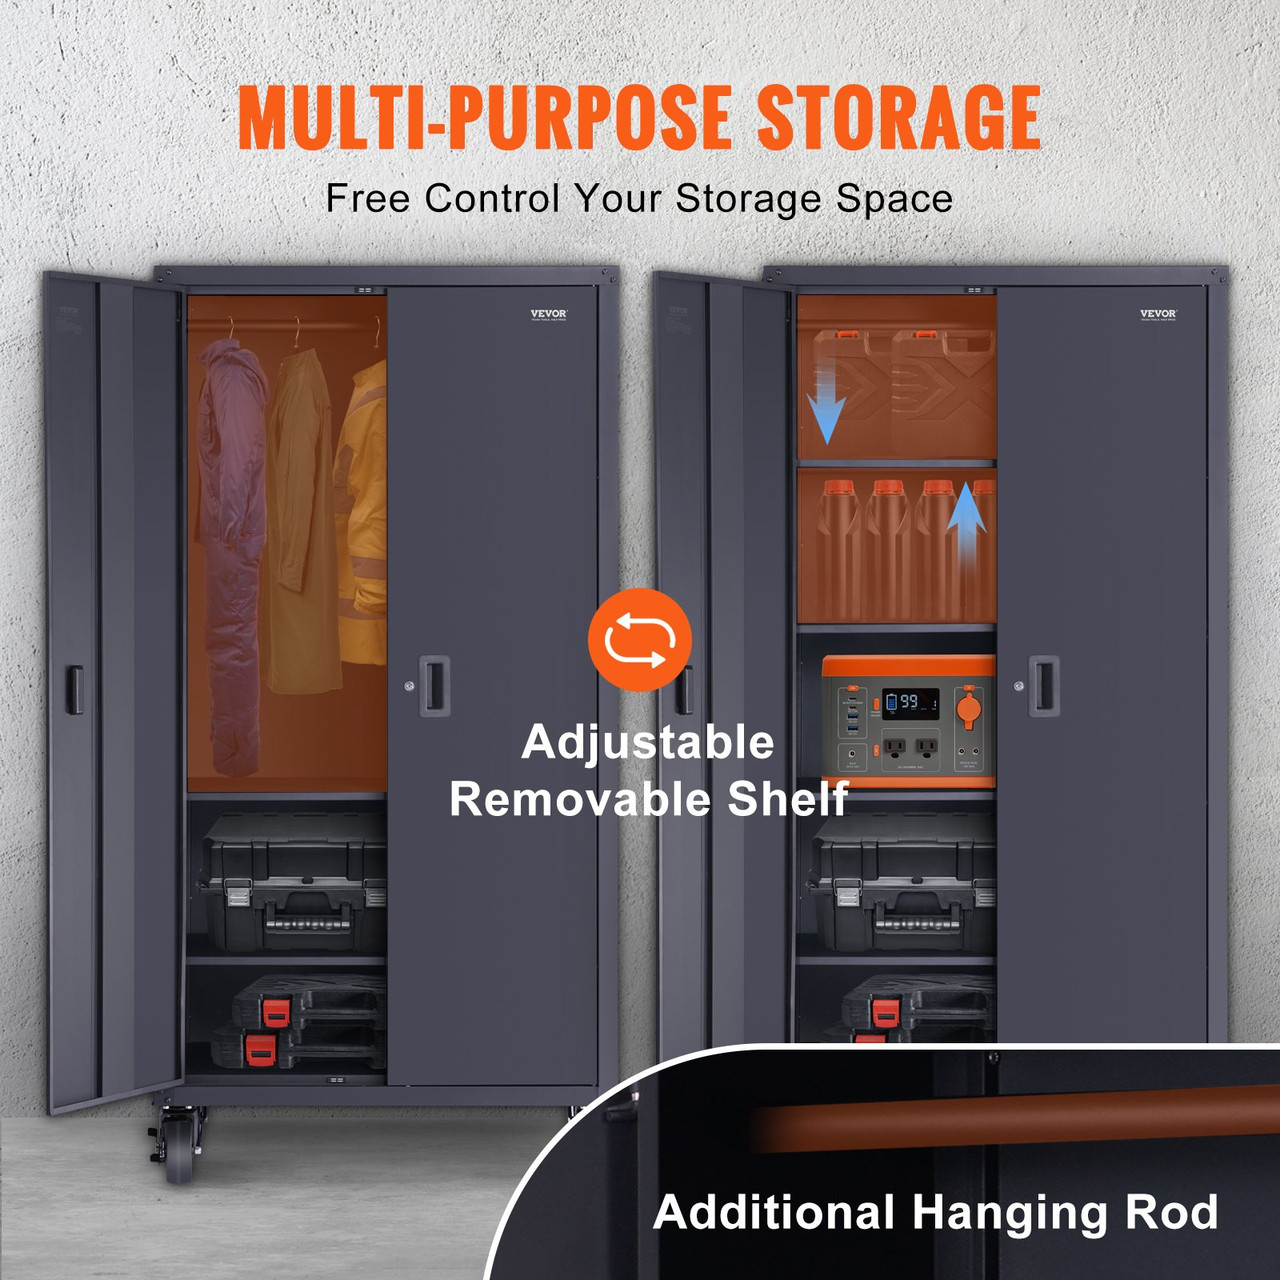 Rolling Metal Storage Cabinet w/ 4 Adjustable Shelves & Lockable Door